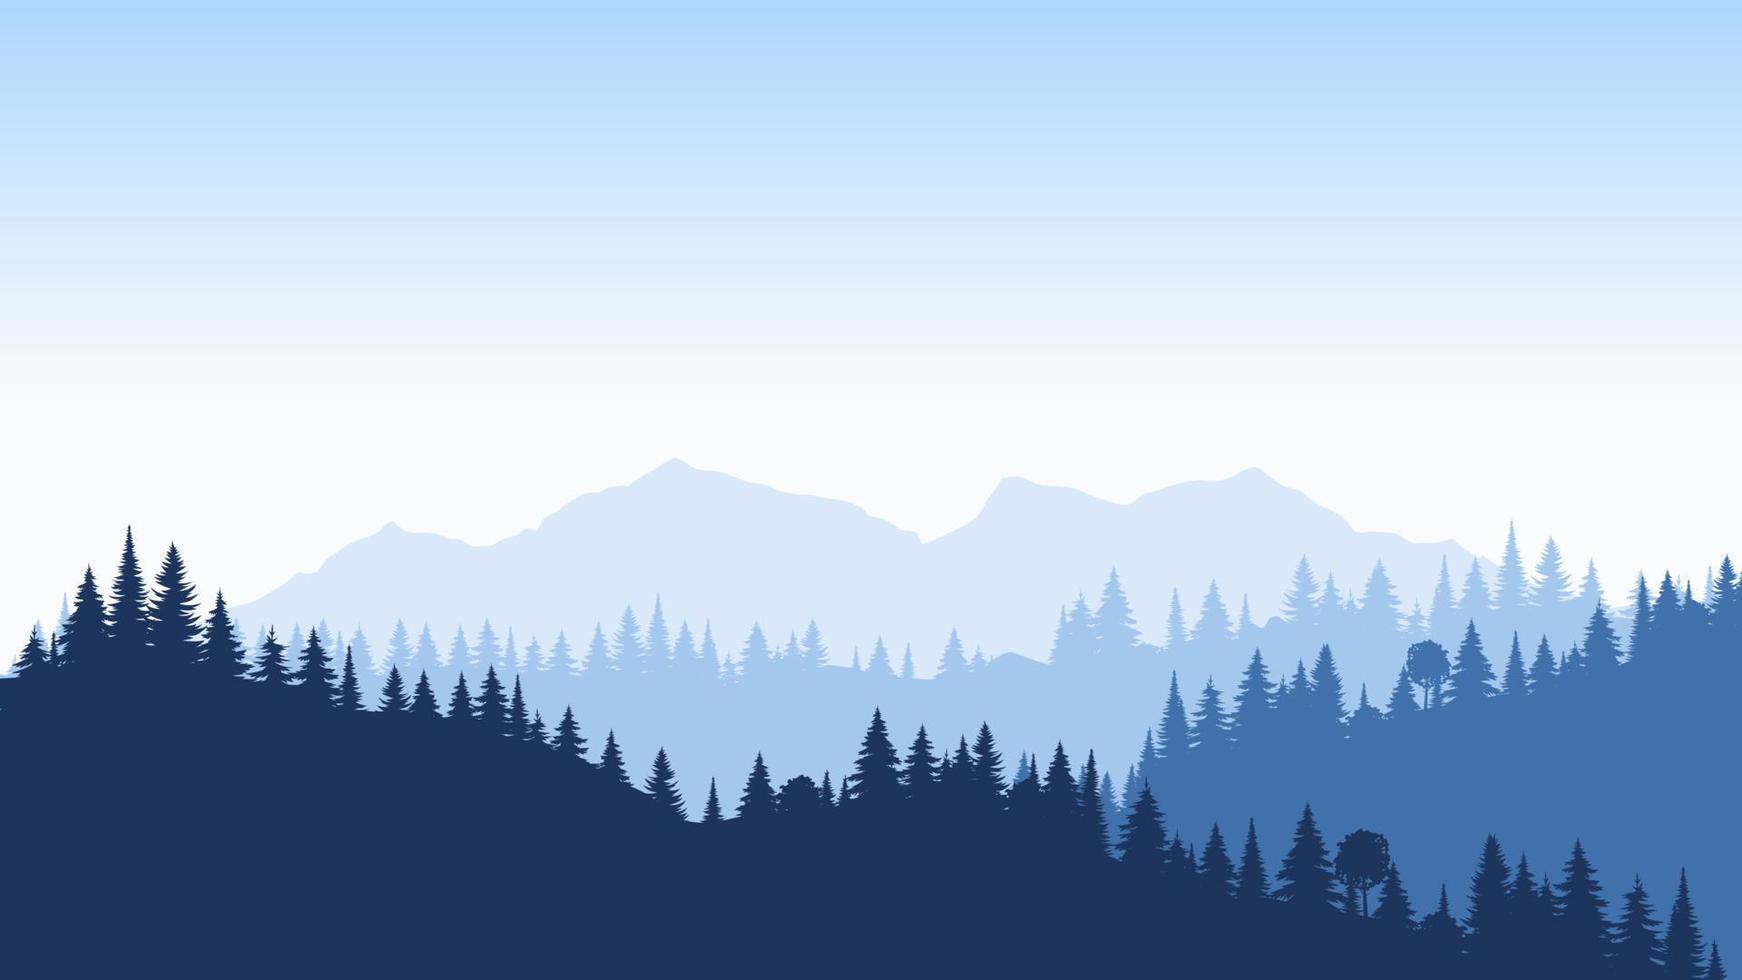 belle forêt panoramique. fond de vecteur isolé réaliste. paysage arbres bleus pins dans la conception de la brume. brouillard mystérieux dans le concept de parc. beauté nature. bannière web de tourisme.